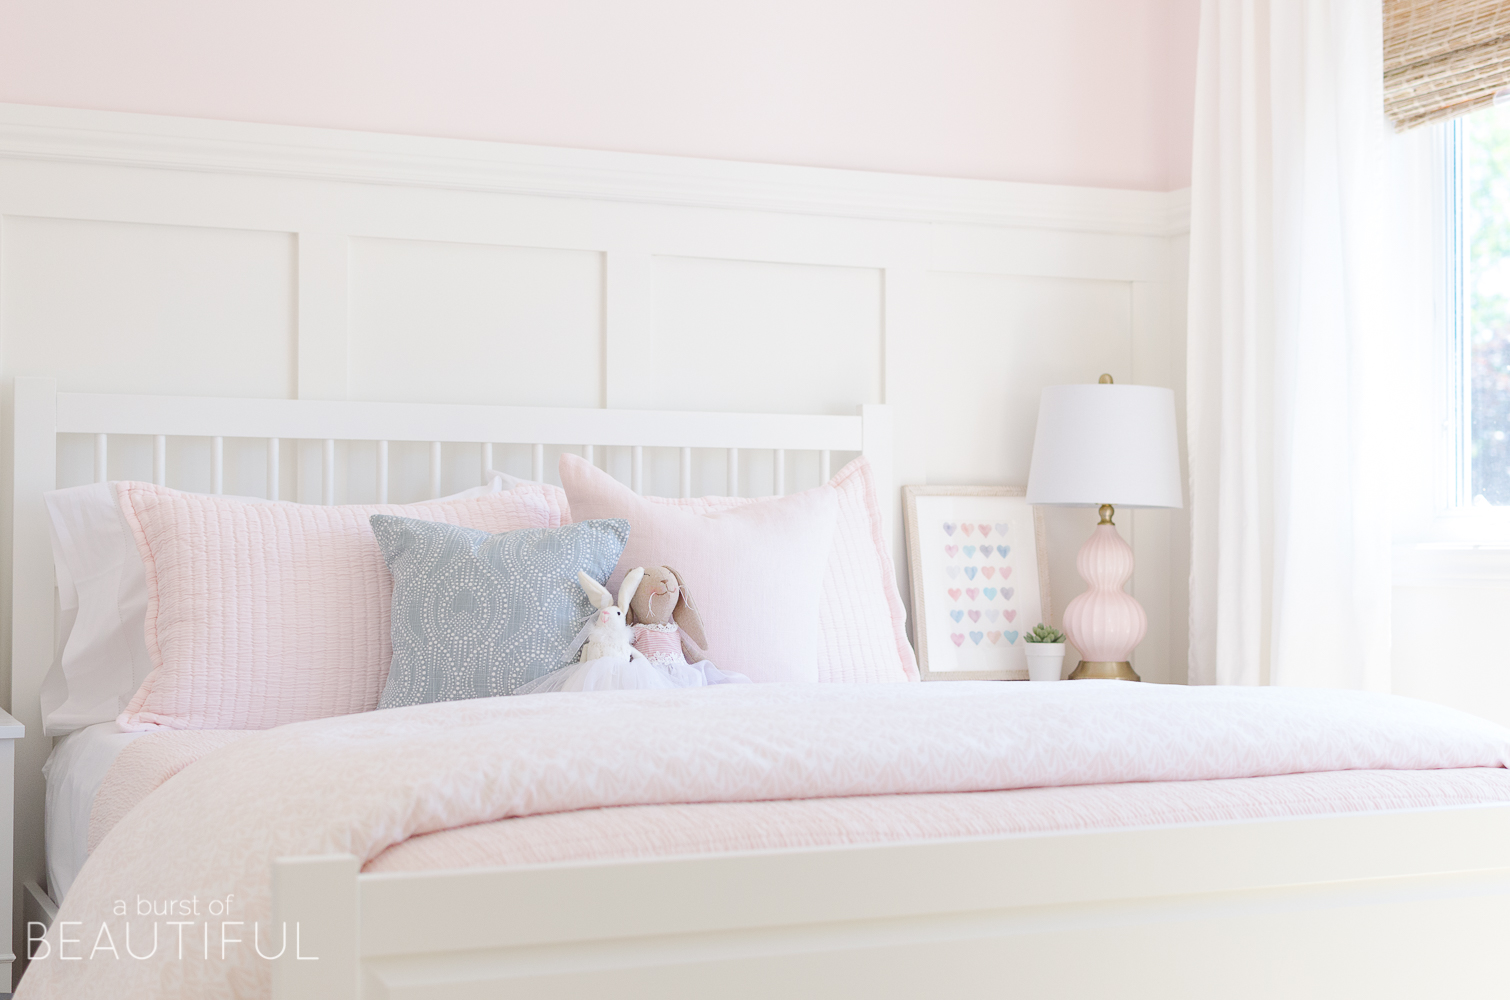 little girls pink bedroom